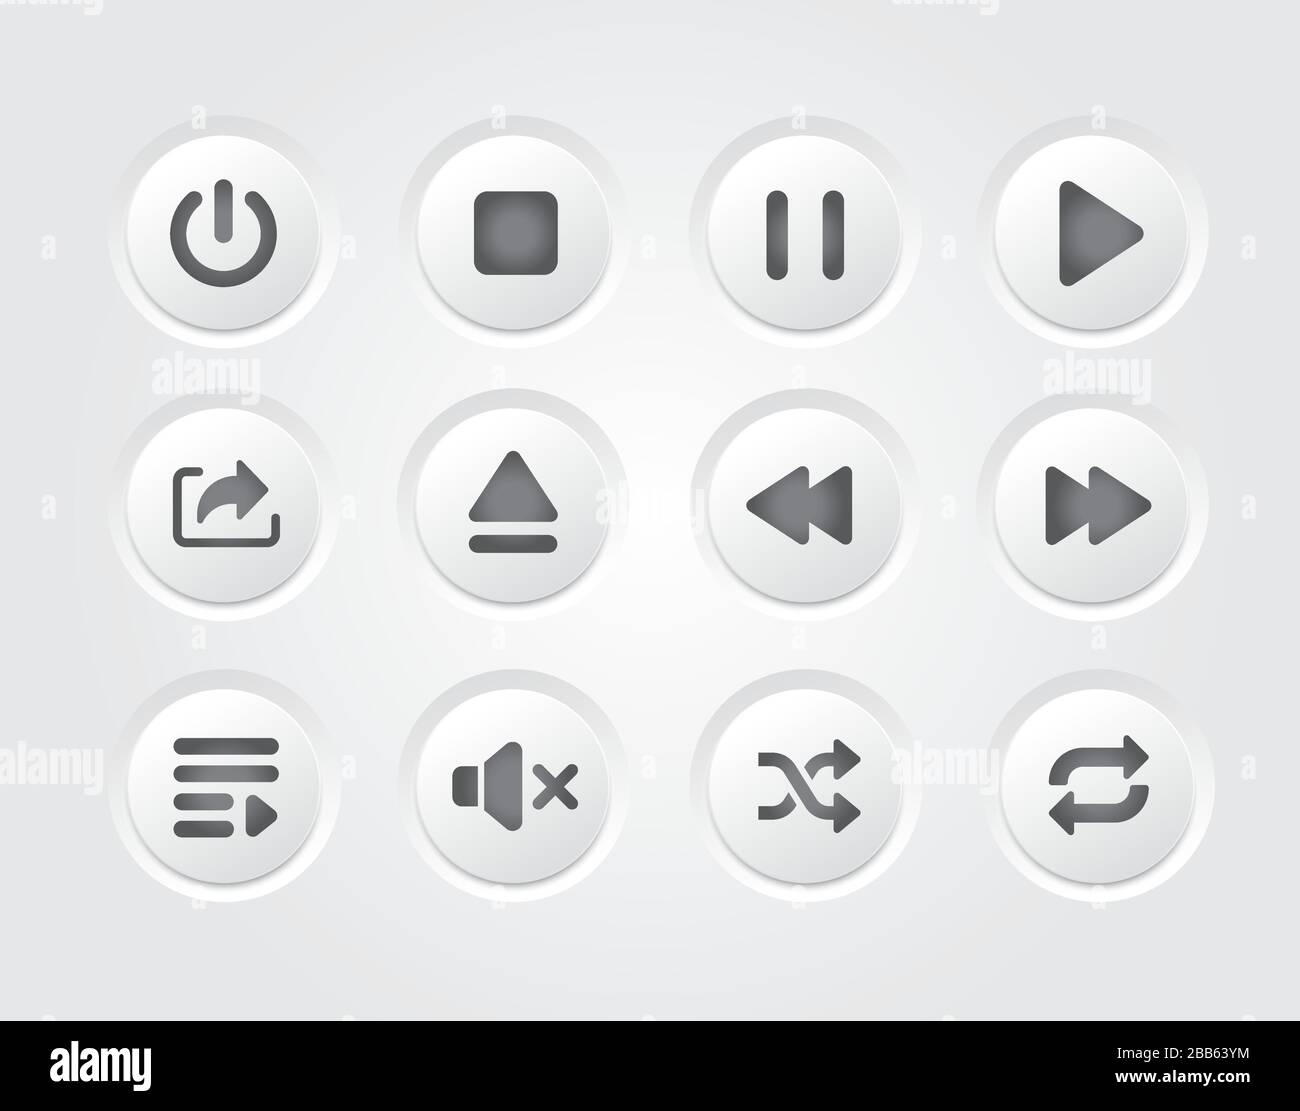 Raccolta di icone del design dell'interfaccia flat gradiente grigio del lettore musicale isolato da Vector Illustrazione Vettoriale